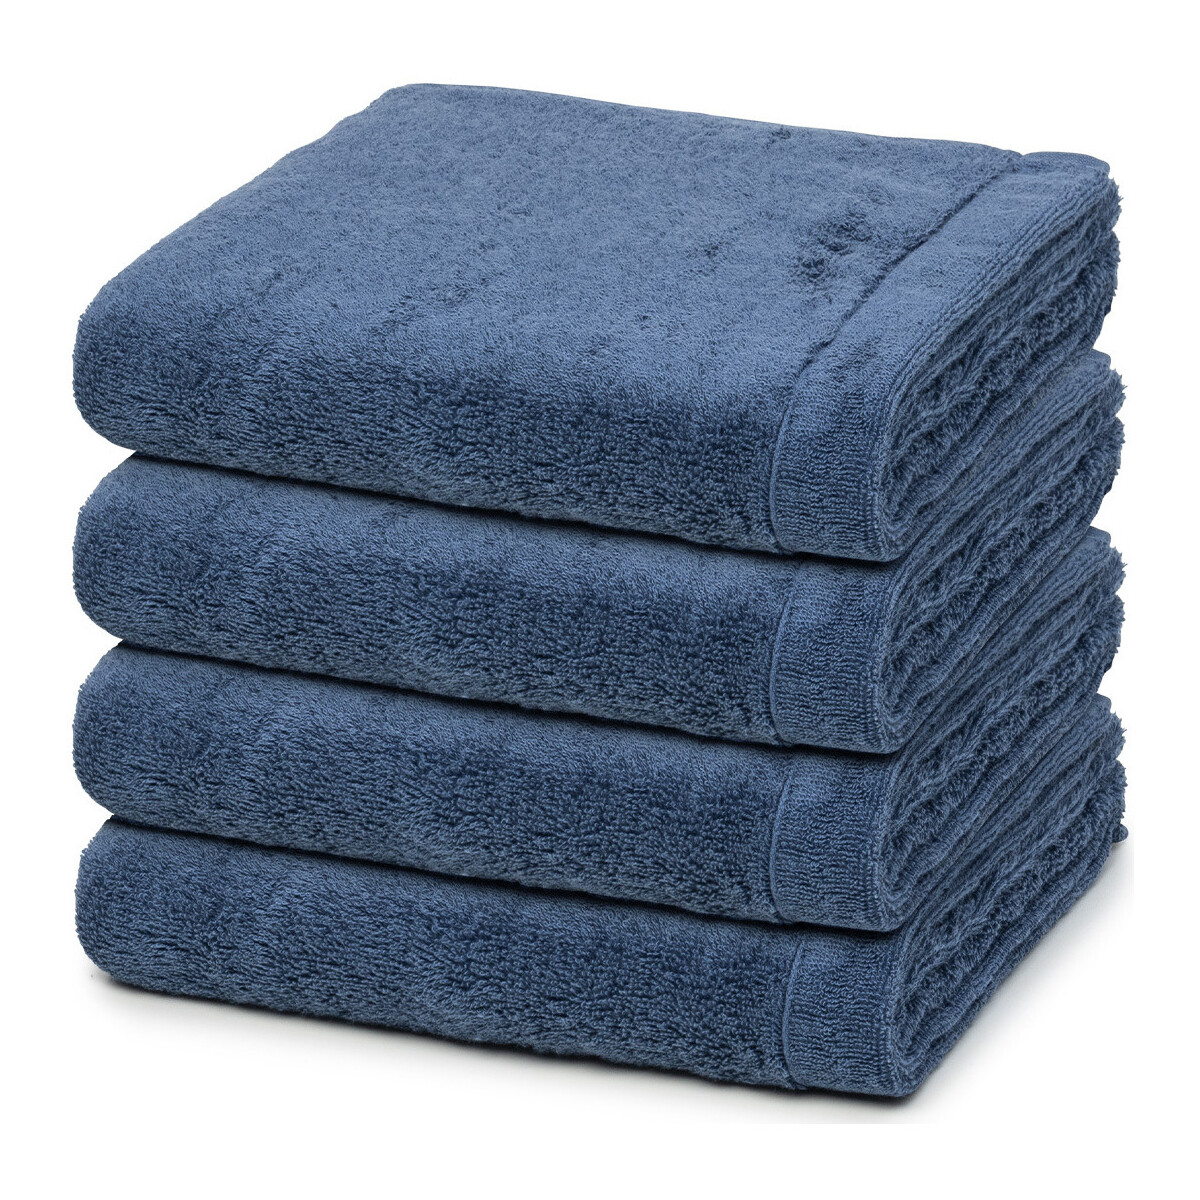 Home Handtuch und Waschlappen Cawö Lifestyle Blau